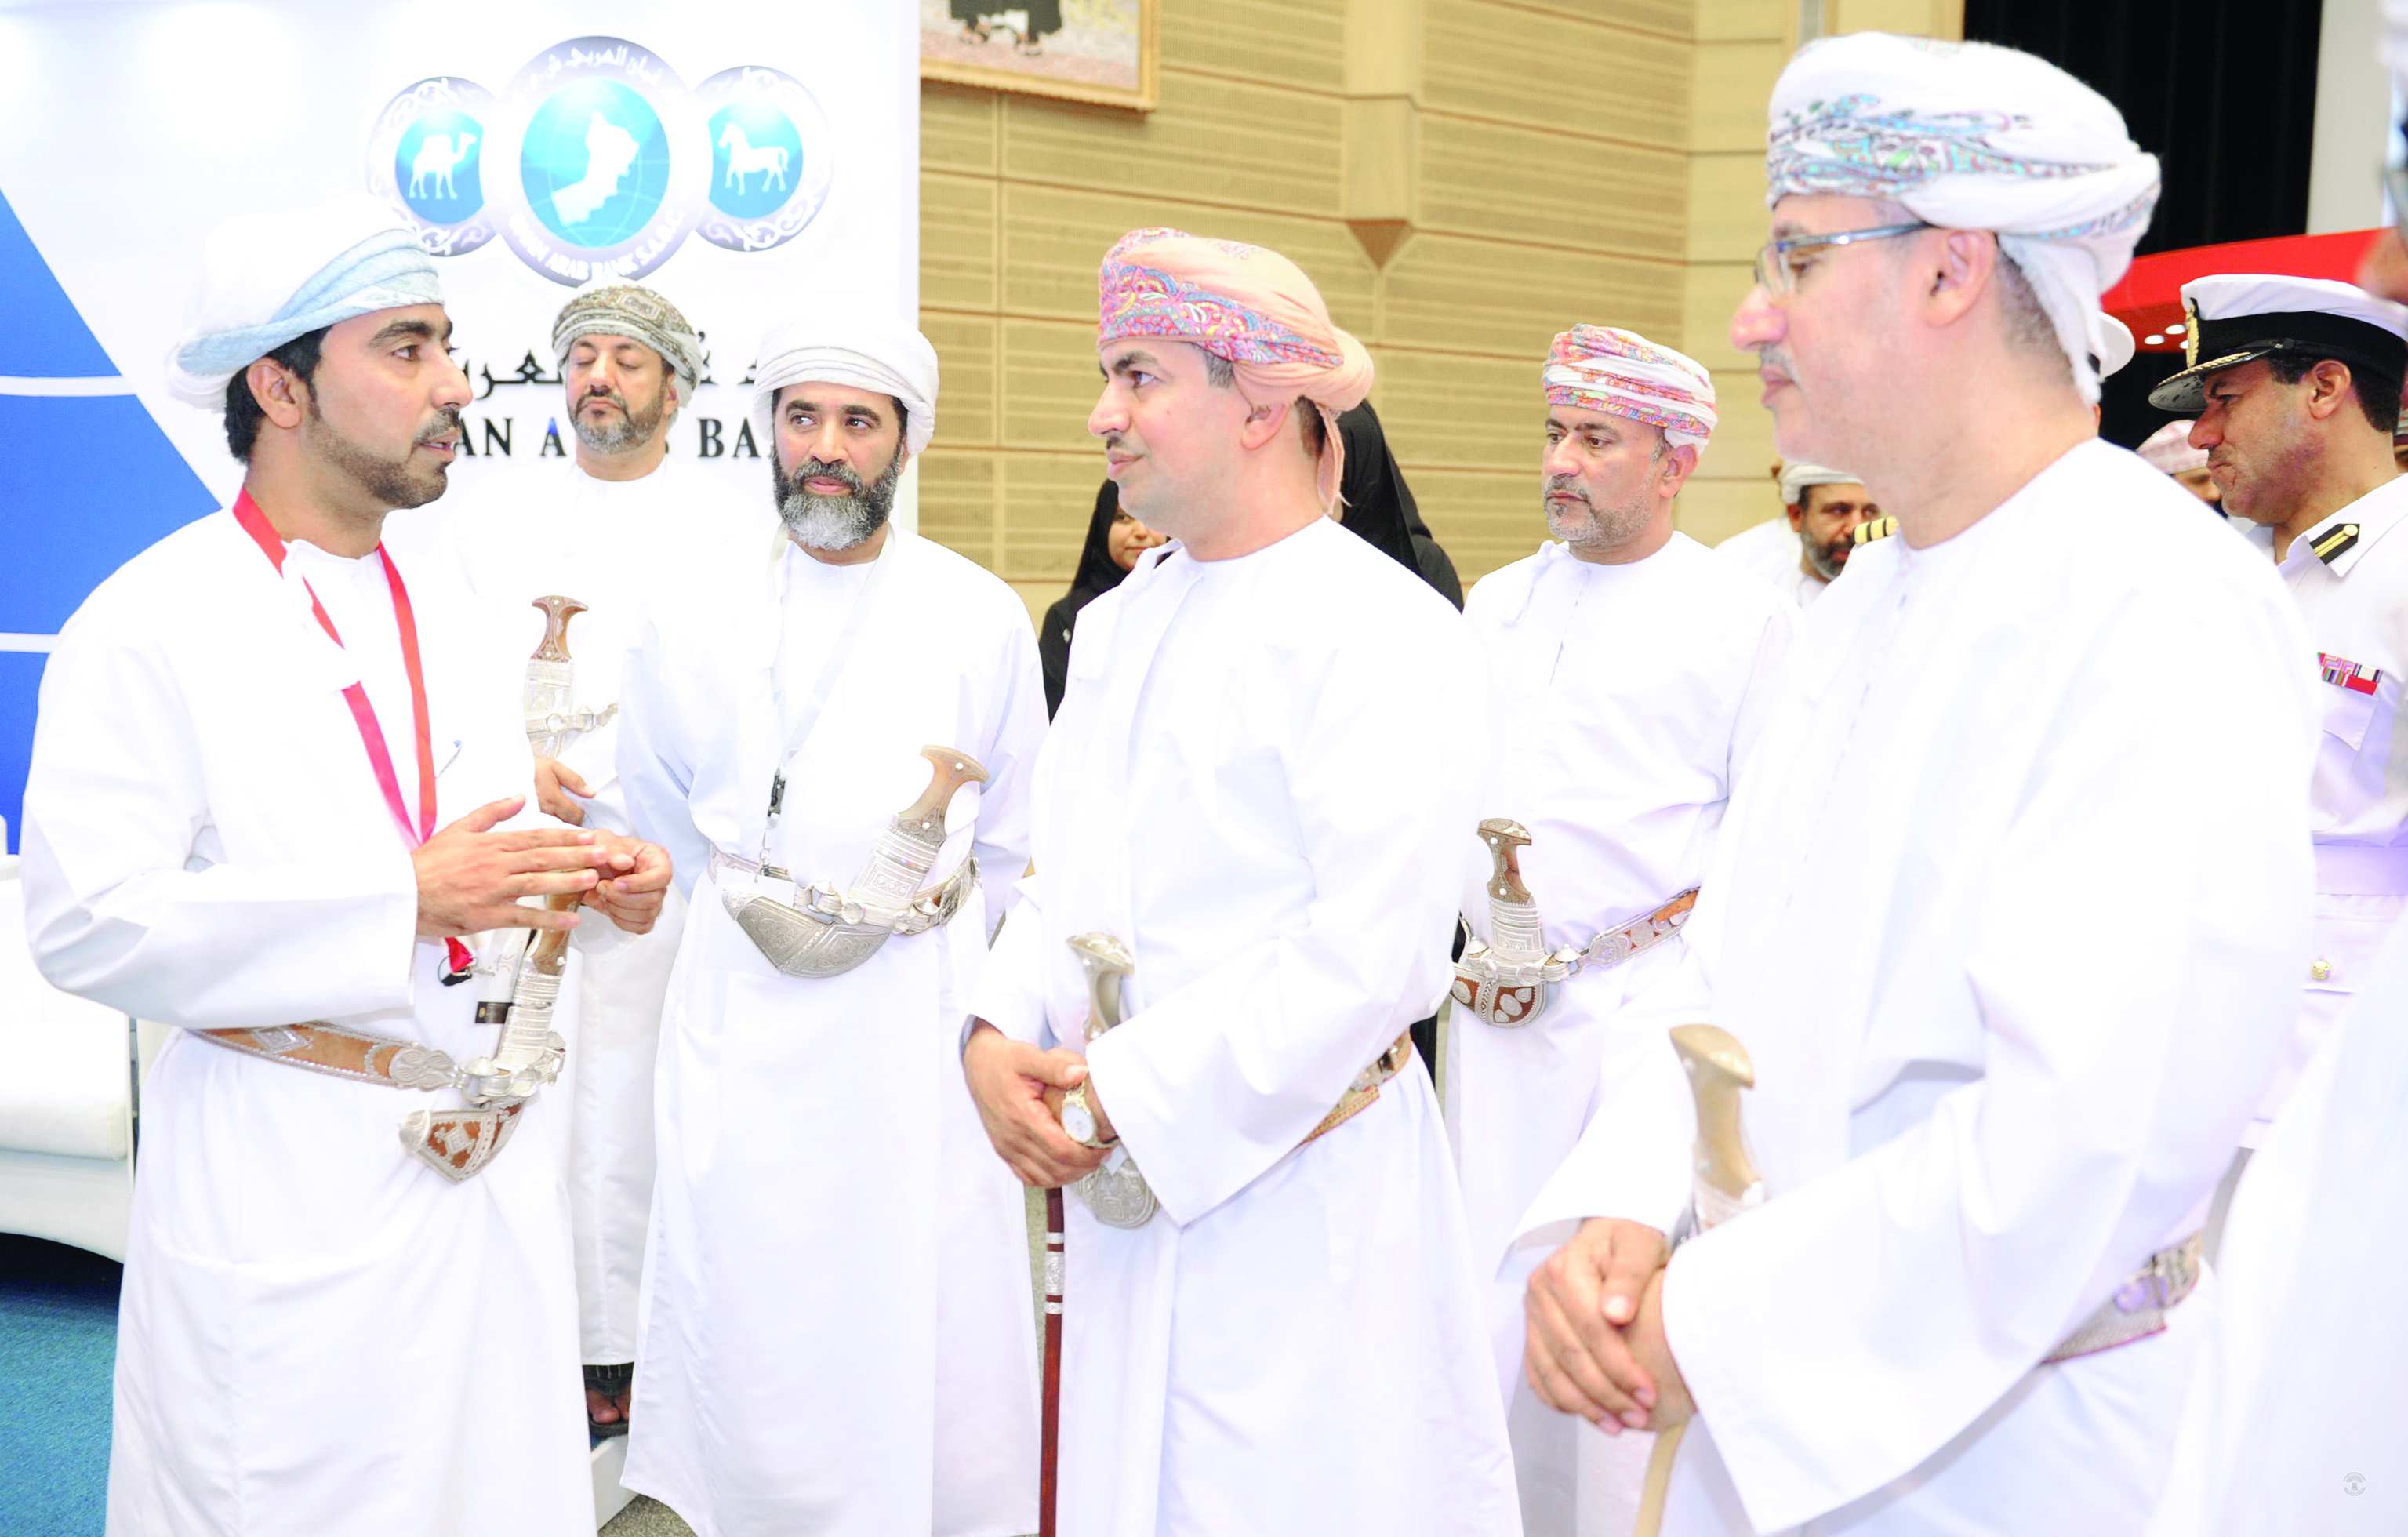 بنك عمان العربي يشارك في معرض فرص العمل والتدريب